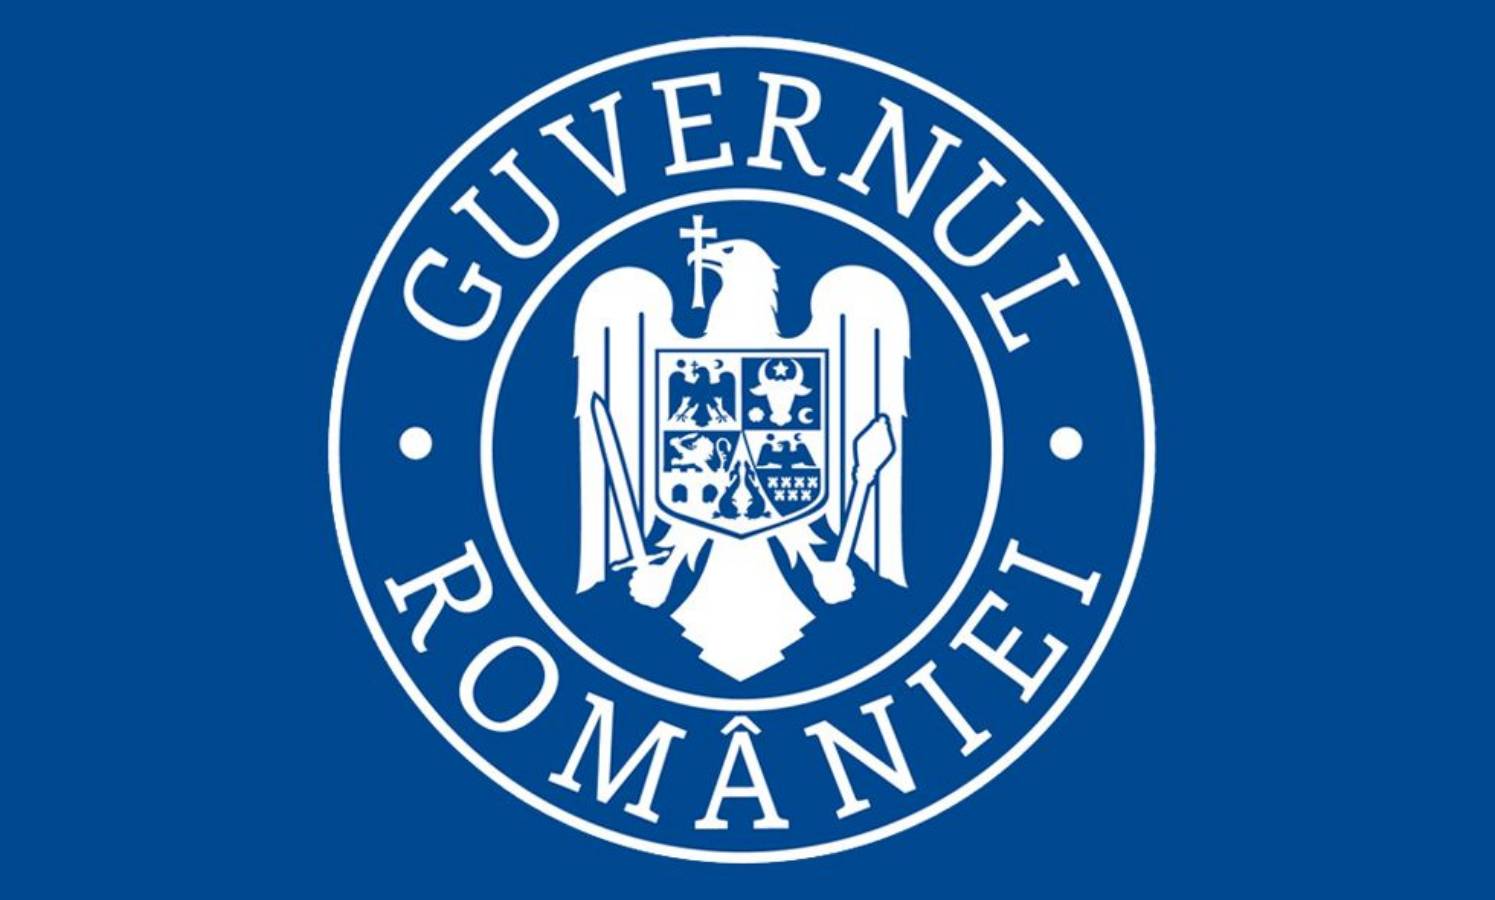 Romanian hallitus "Start of the City" rokottaa kyläohjelman